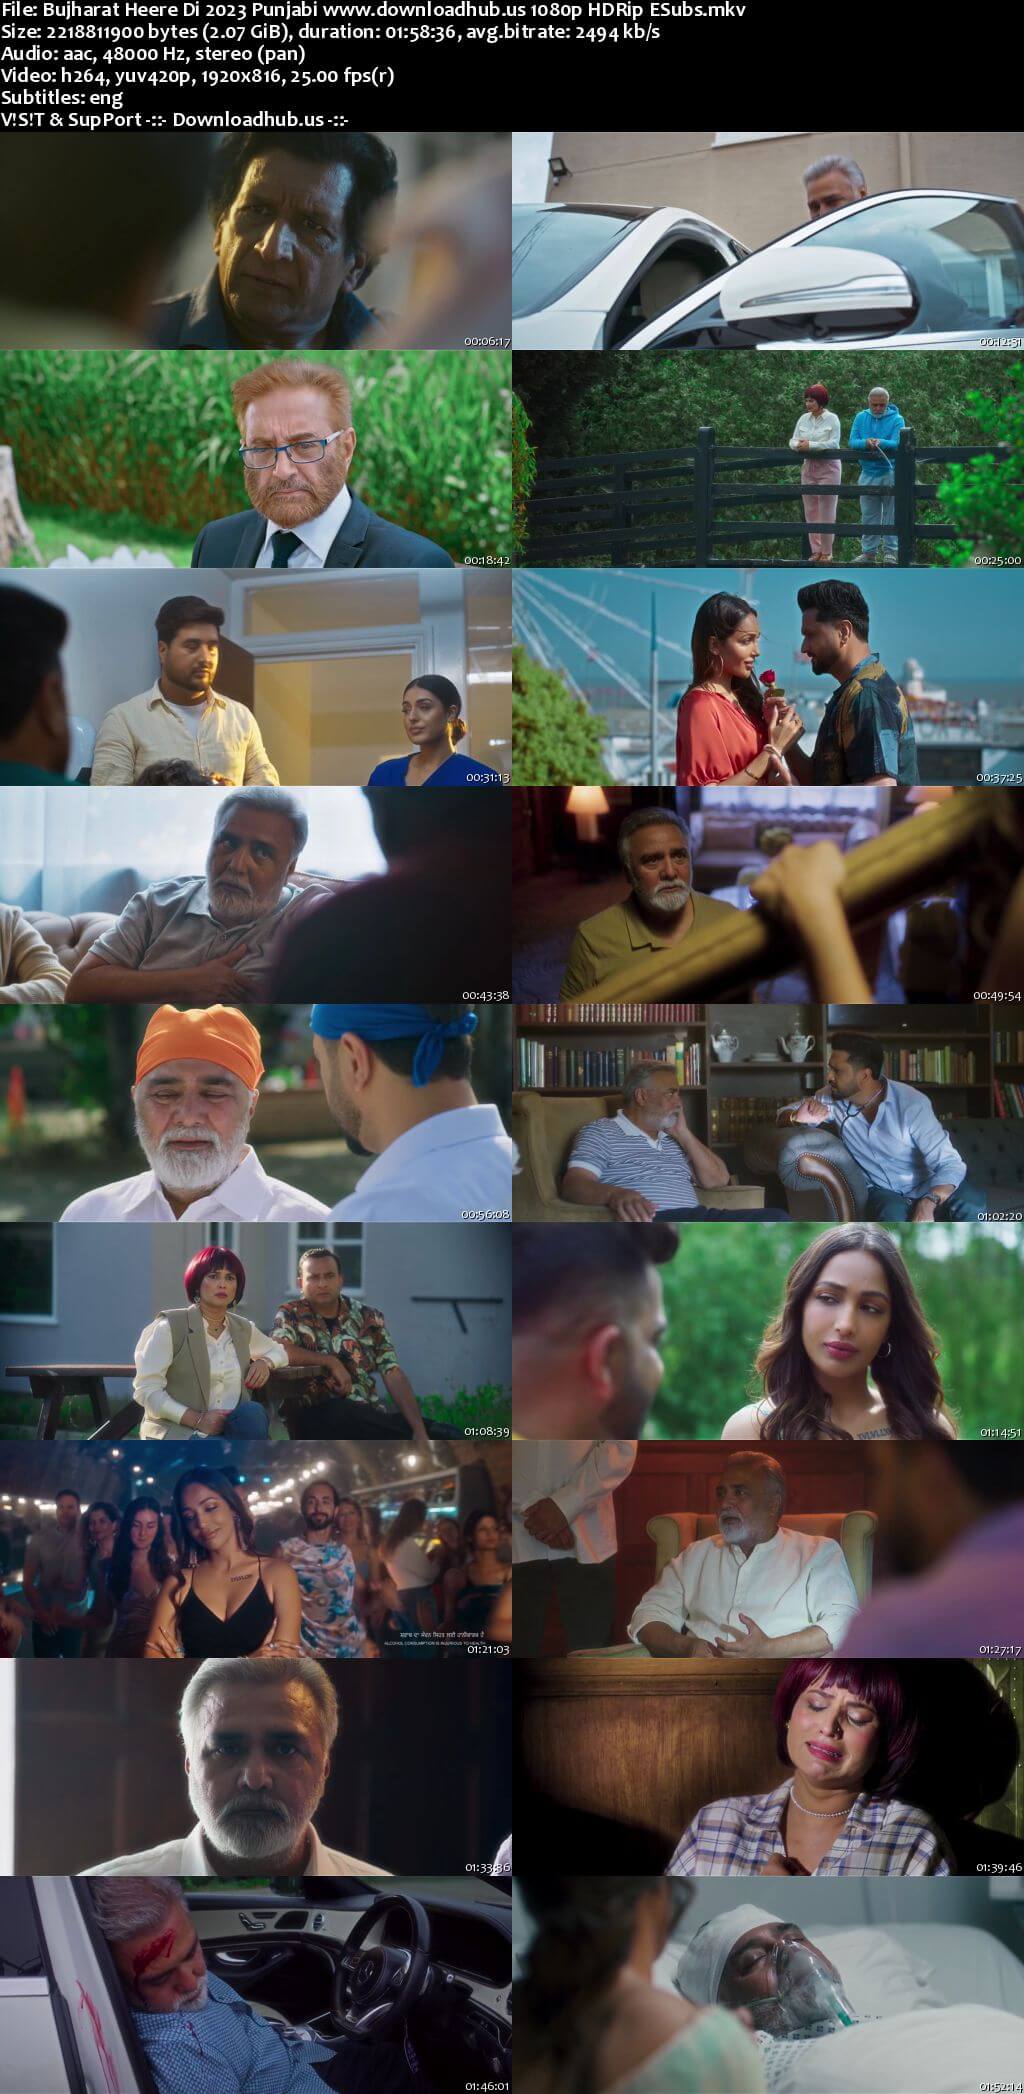 Bujharat Heere Di 2023 Punjabi Movie 1080p 720p 480p HDRip ESubs HEVC